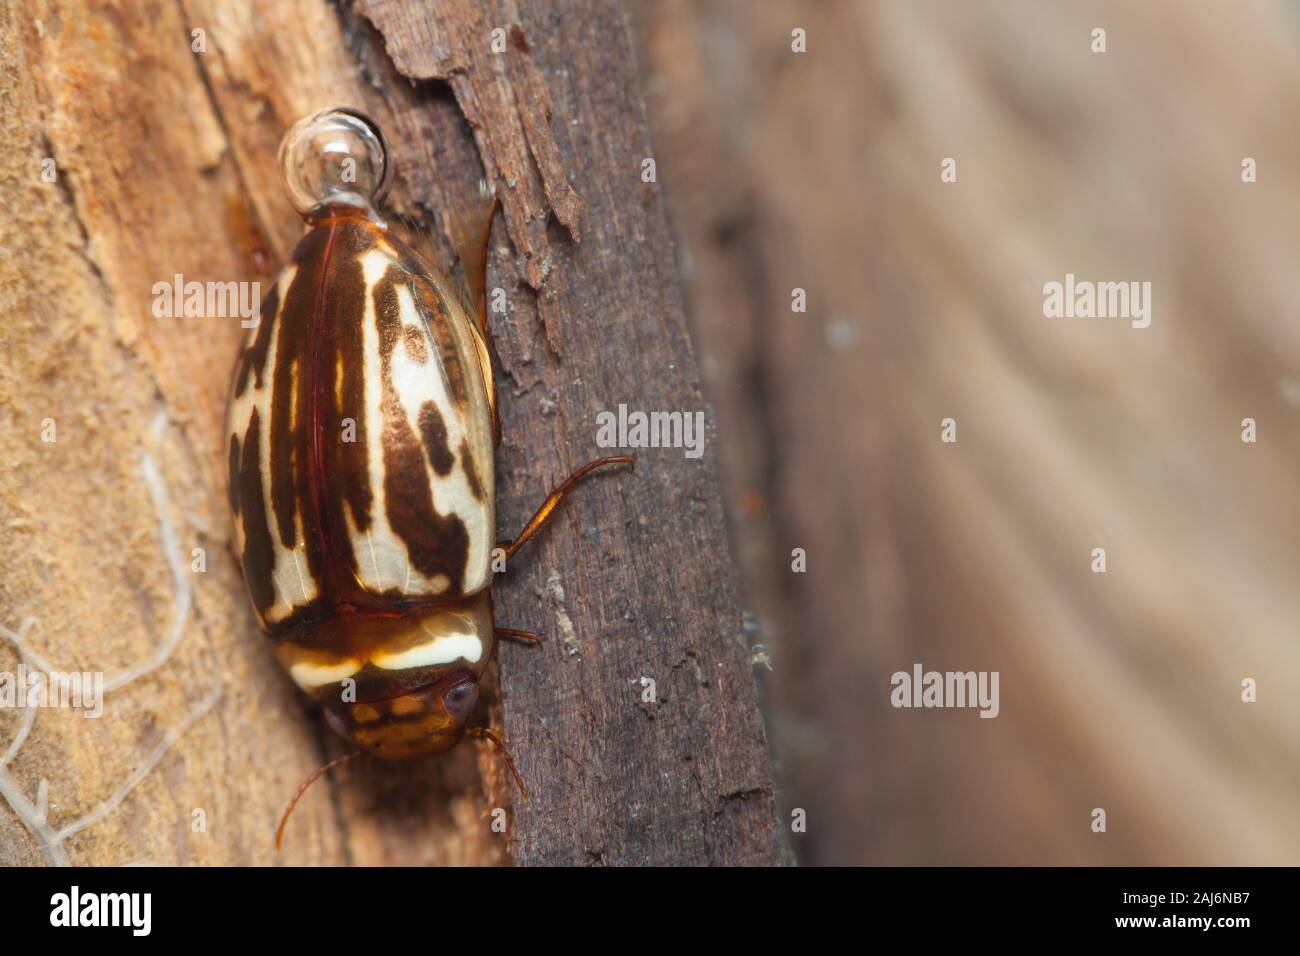 Diving beetle (Platambus maculatus) Stock Photo